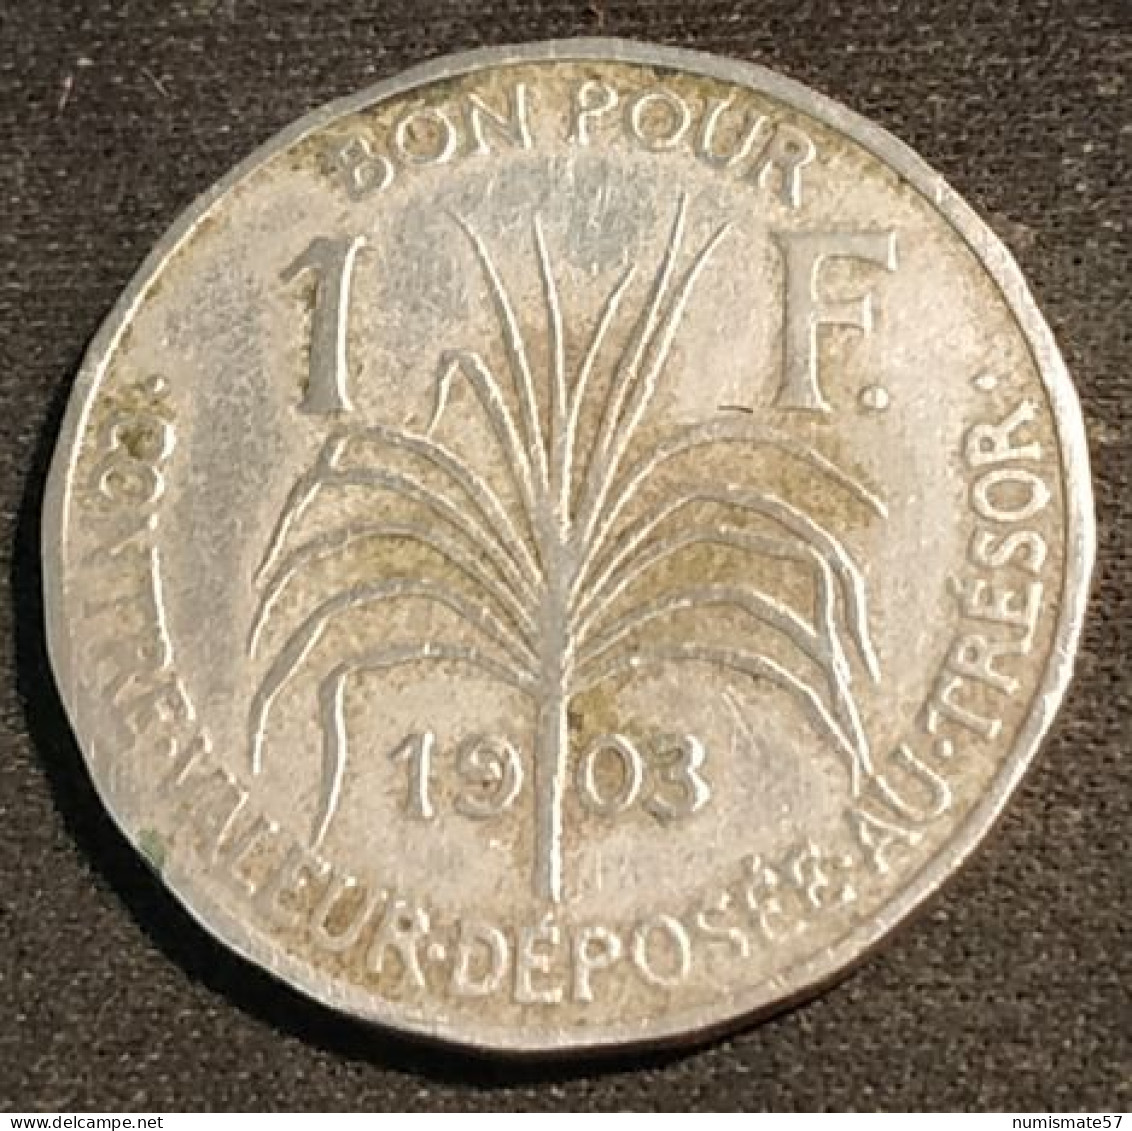 RARE - GUADELOUPE - BON POUR 1 FRANC 1903 - KM 46 - Guadeloupe & Martinique